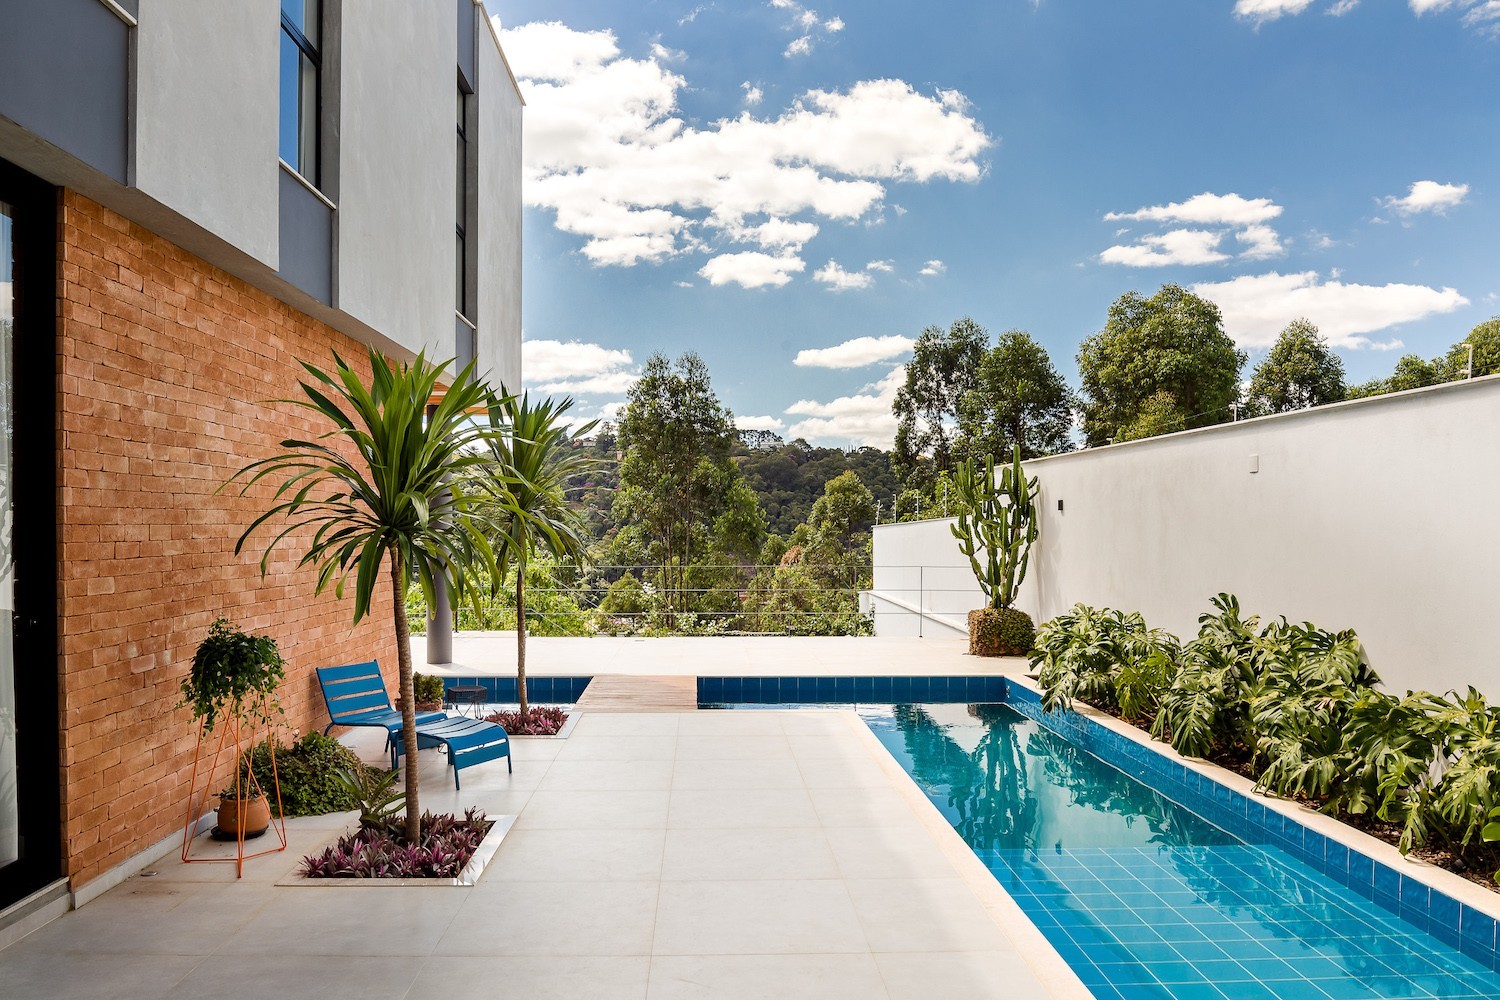 O projeto do escritório Marcella Peixoto Arquitetura Design é um bom exemplo de área de lazer com piscina, para relaxar e se refrescar (Foto: José Leonardo Afonso / Divulgação)